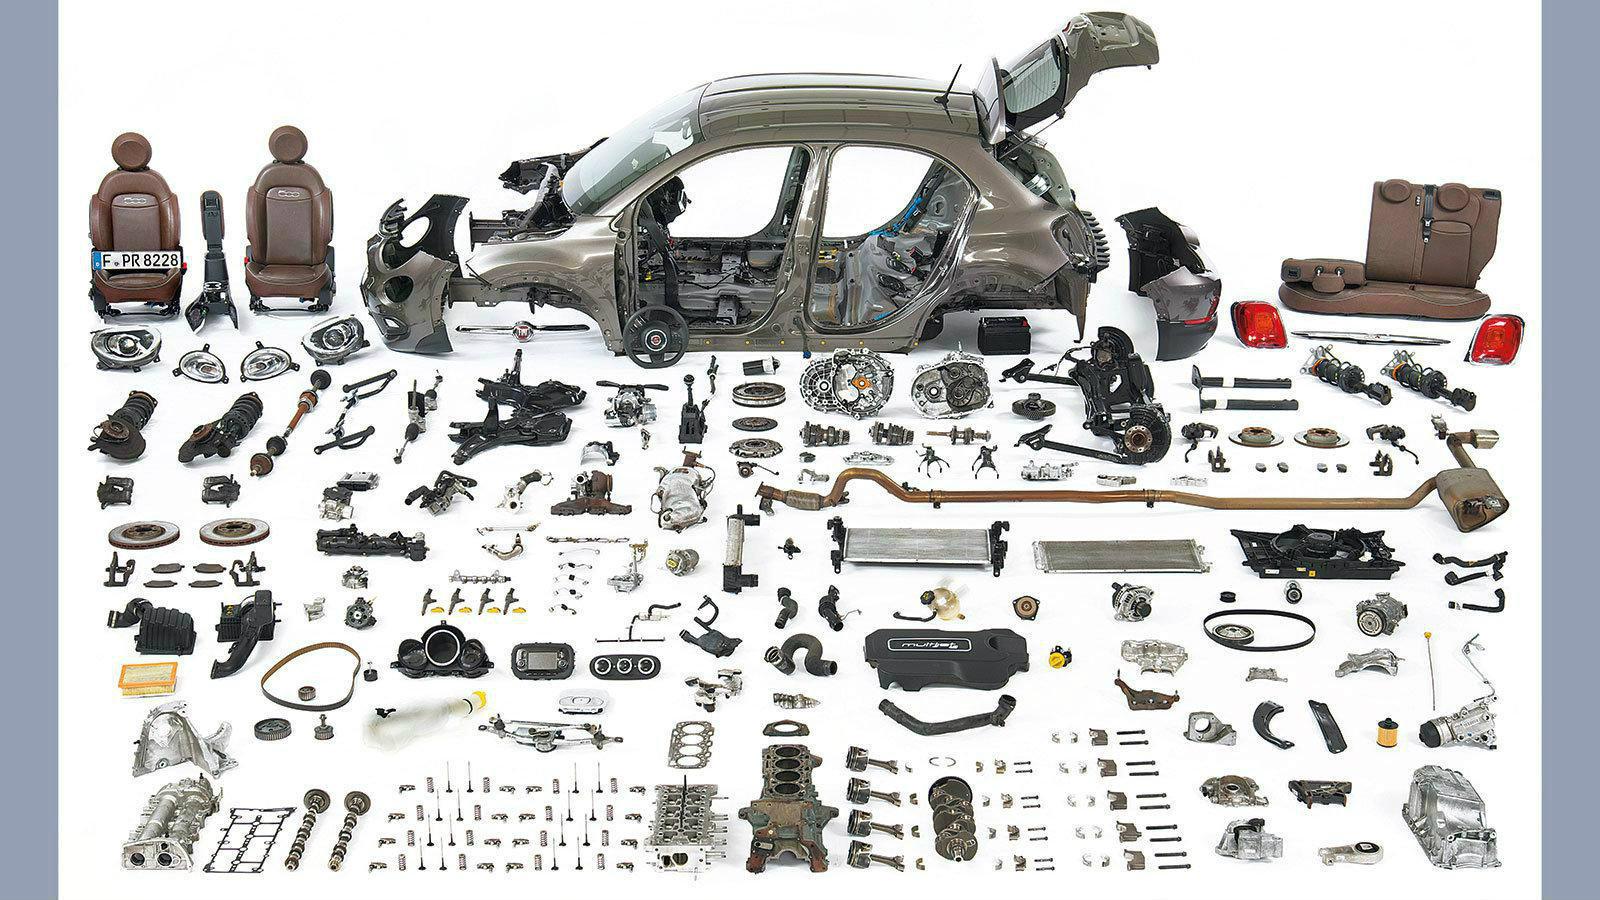 Μια συνεργασία της Autobild με την Dekra 
- Ένα Fiat για μια ζωή. Κινητήρας και κιβώτιο σε άριστη κατάσταση. Τα επιμέρους τμήματα χωρίς τριγμούς. 

